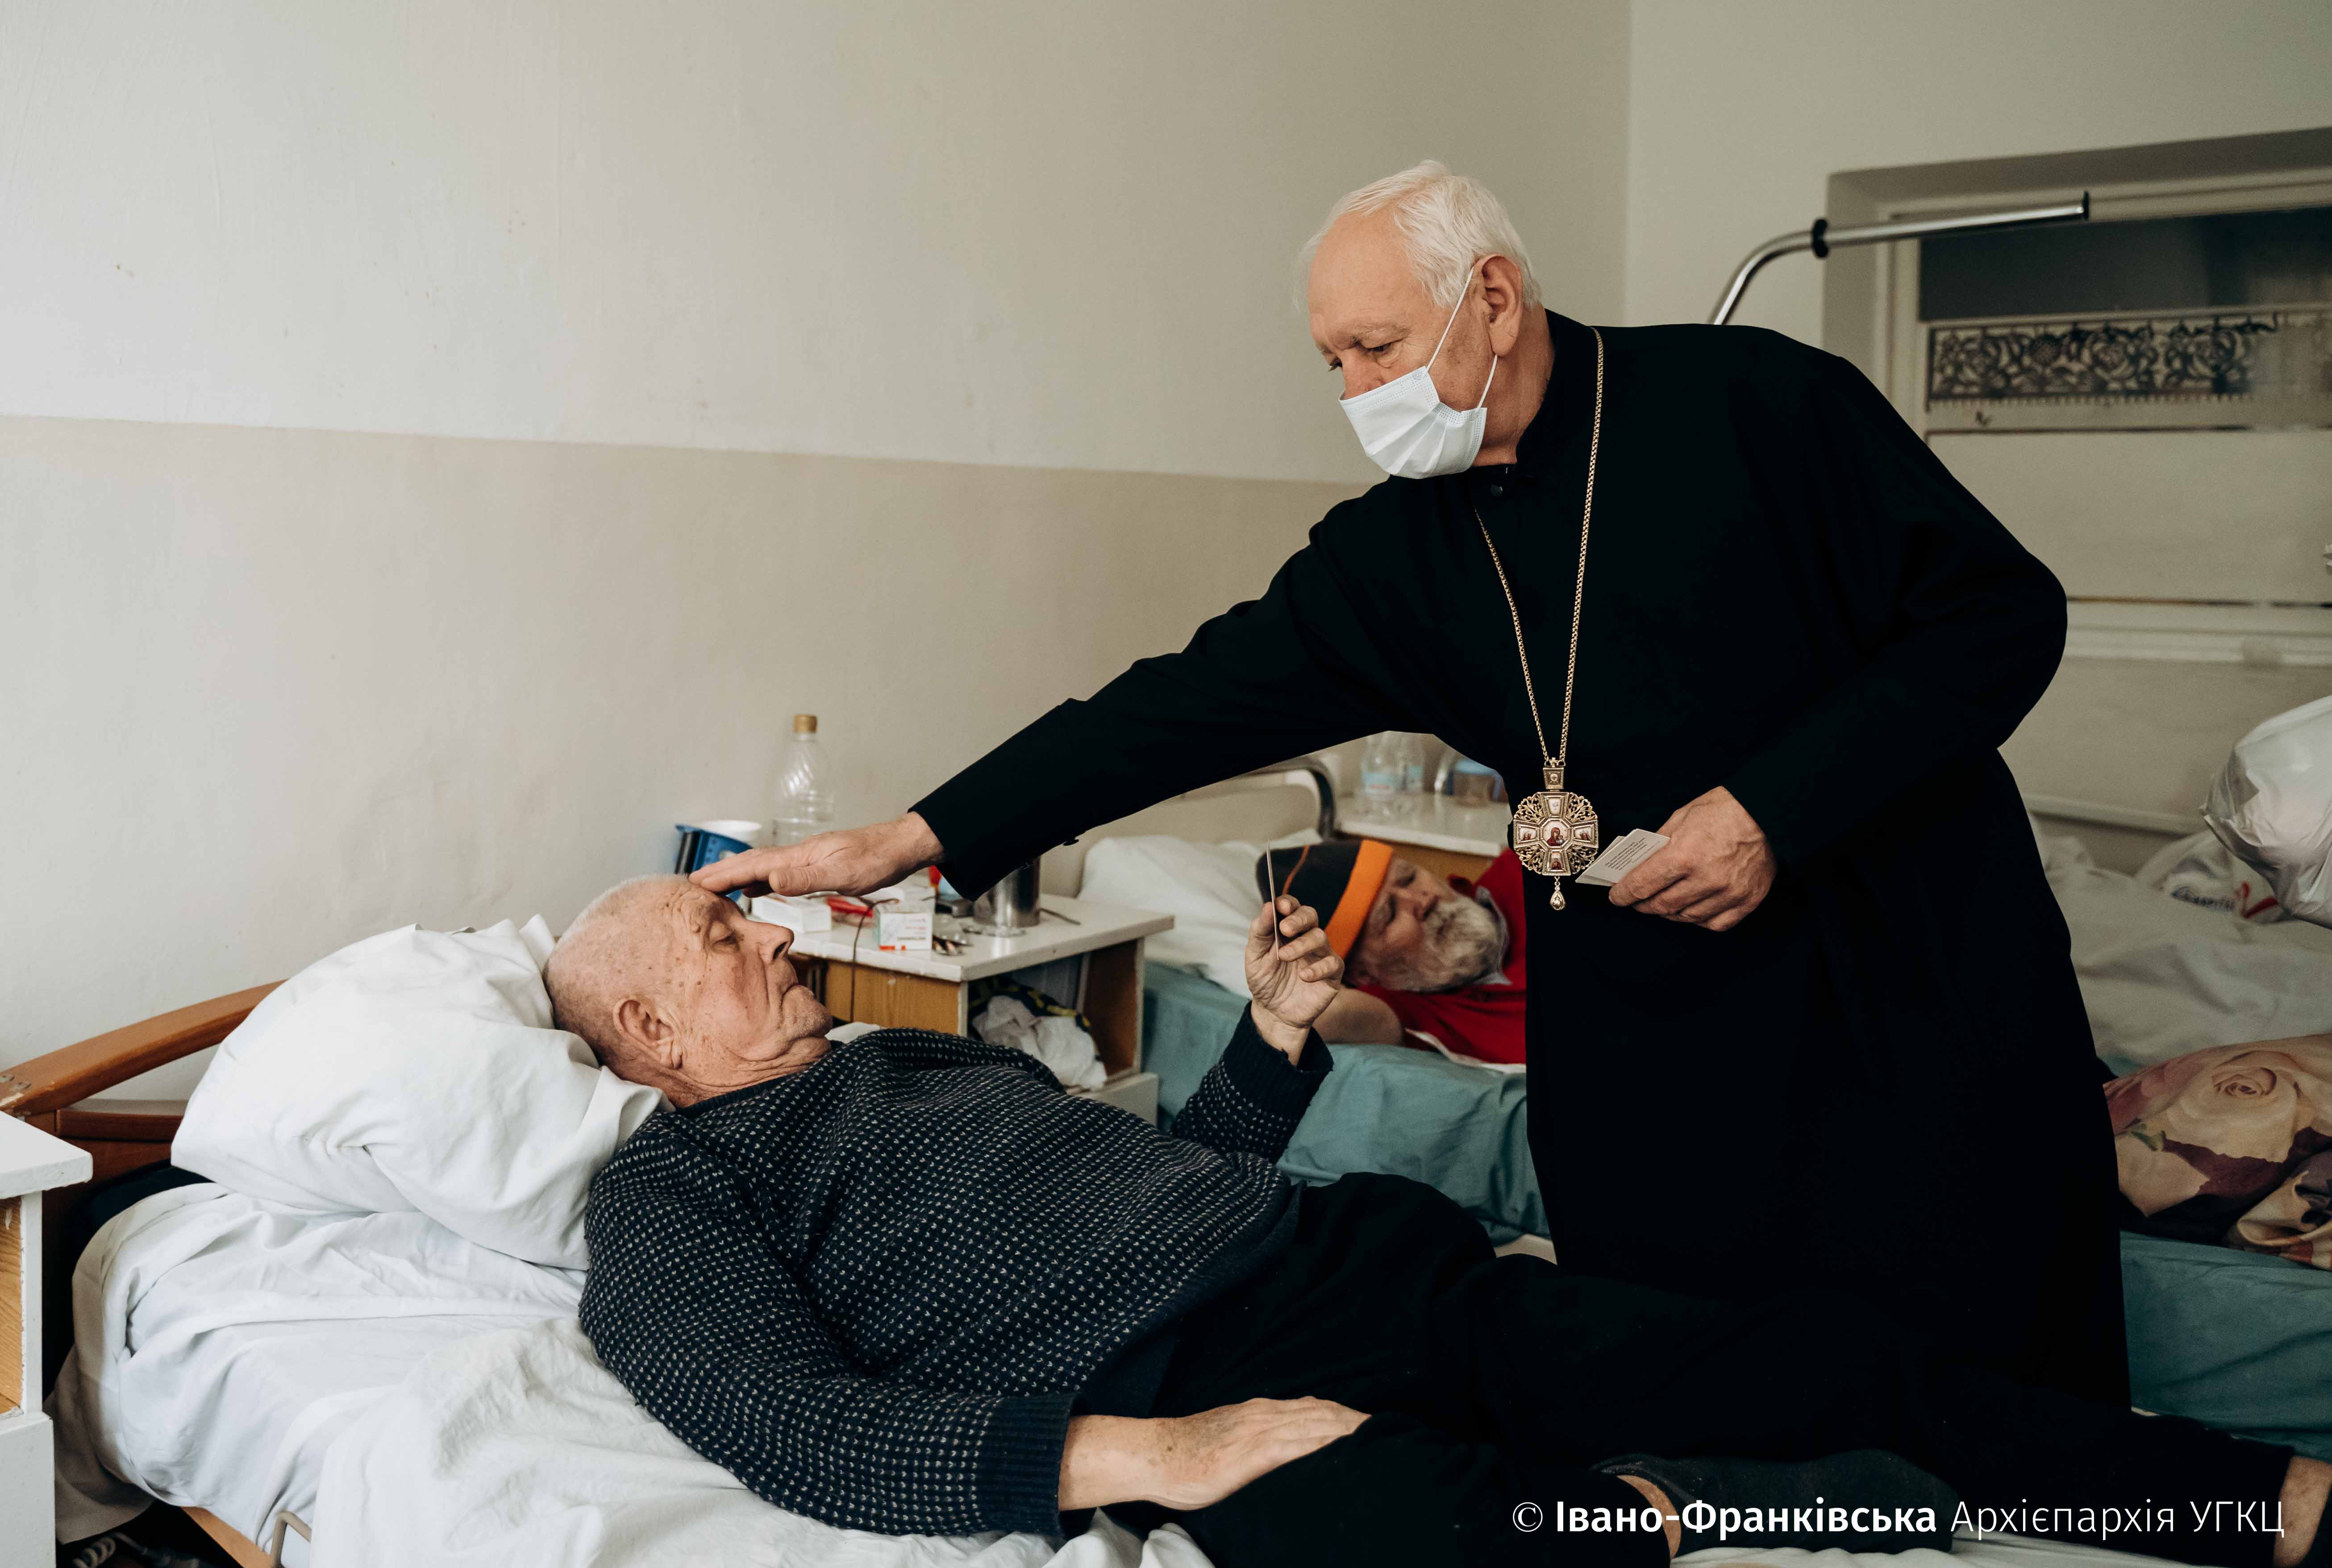 Митрополит Володимир Війтишин провідав хворих зі сходу у Лисецькій лікарні (ФОТО)